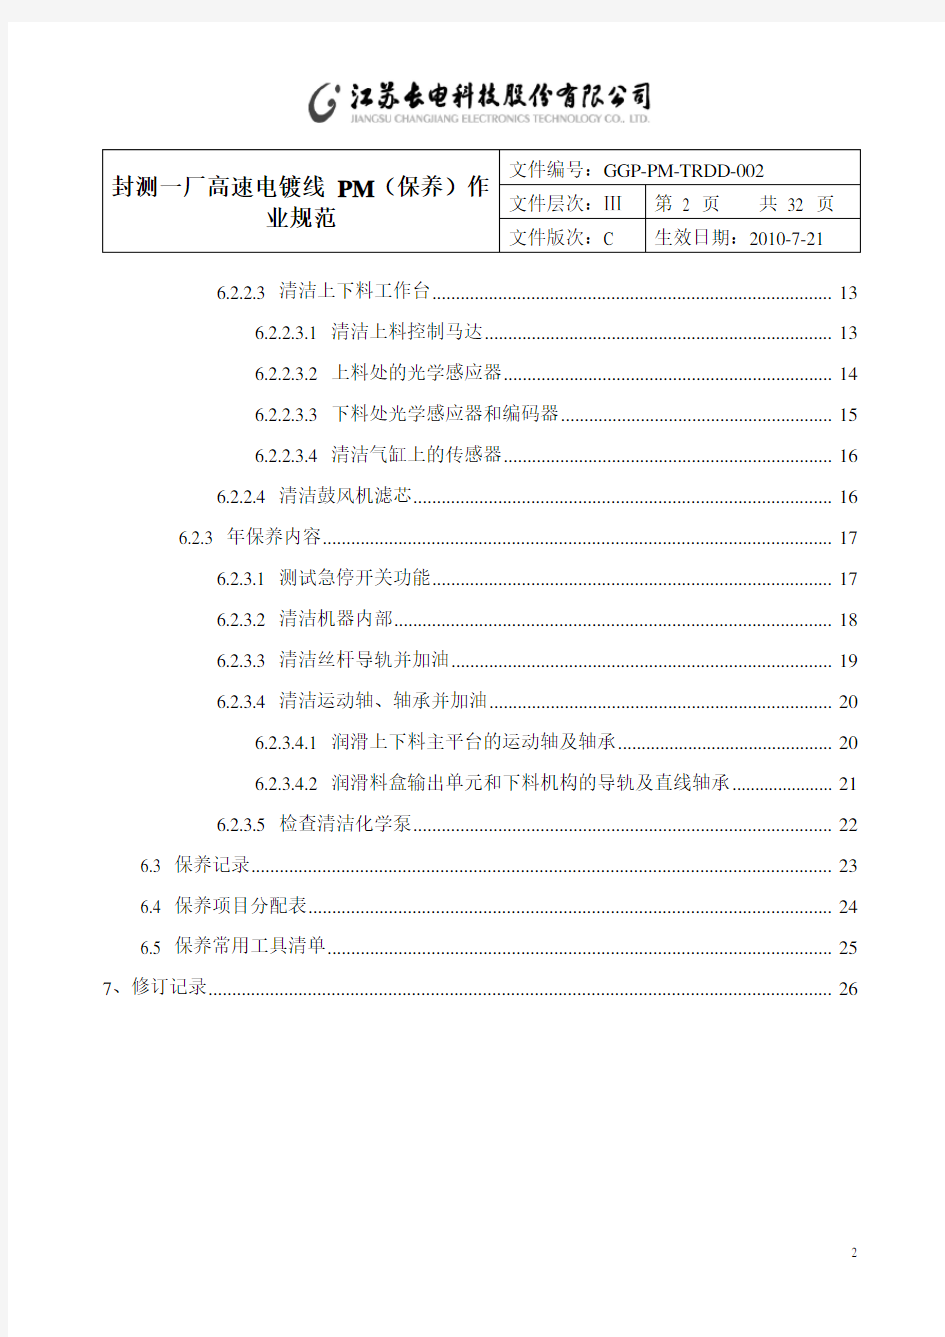 高速电镀线PM保养作业规范(7.21)